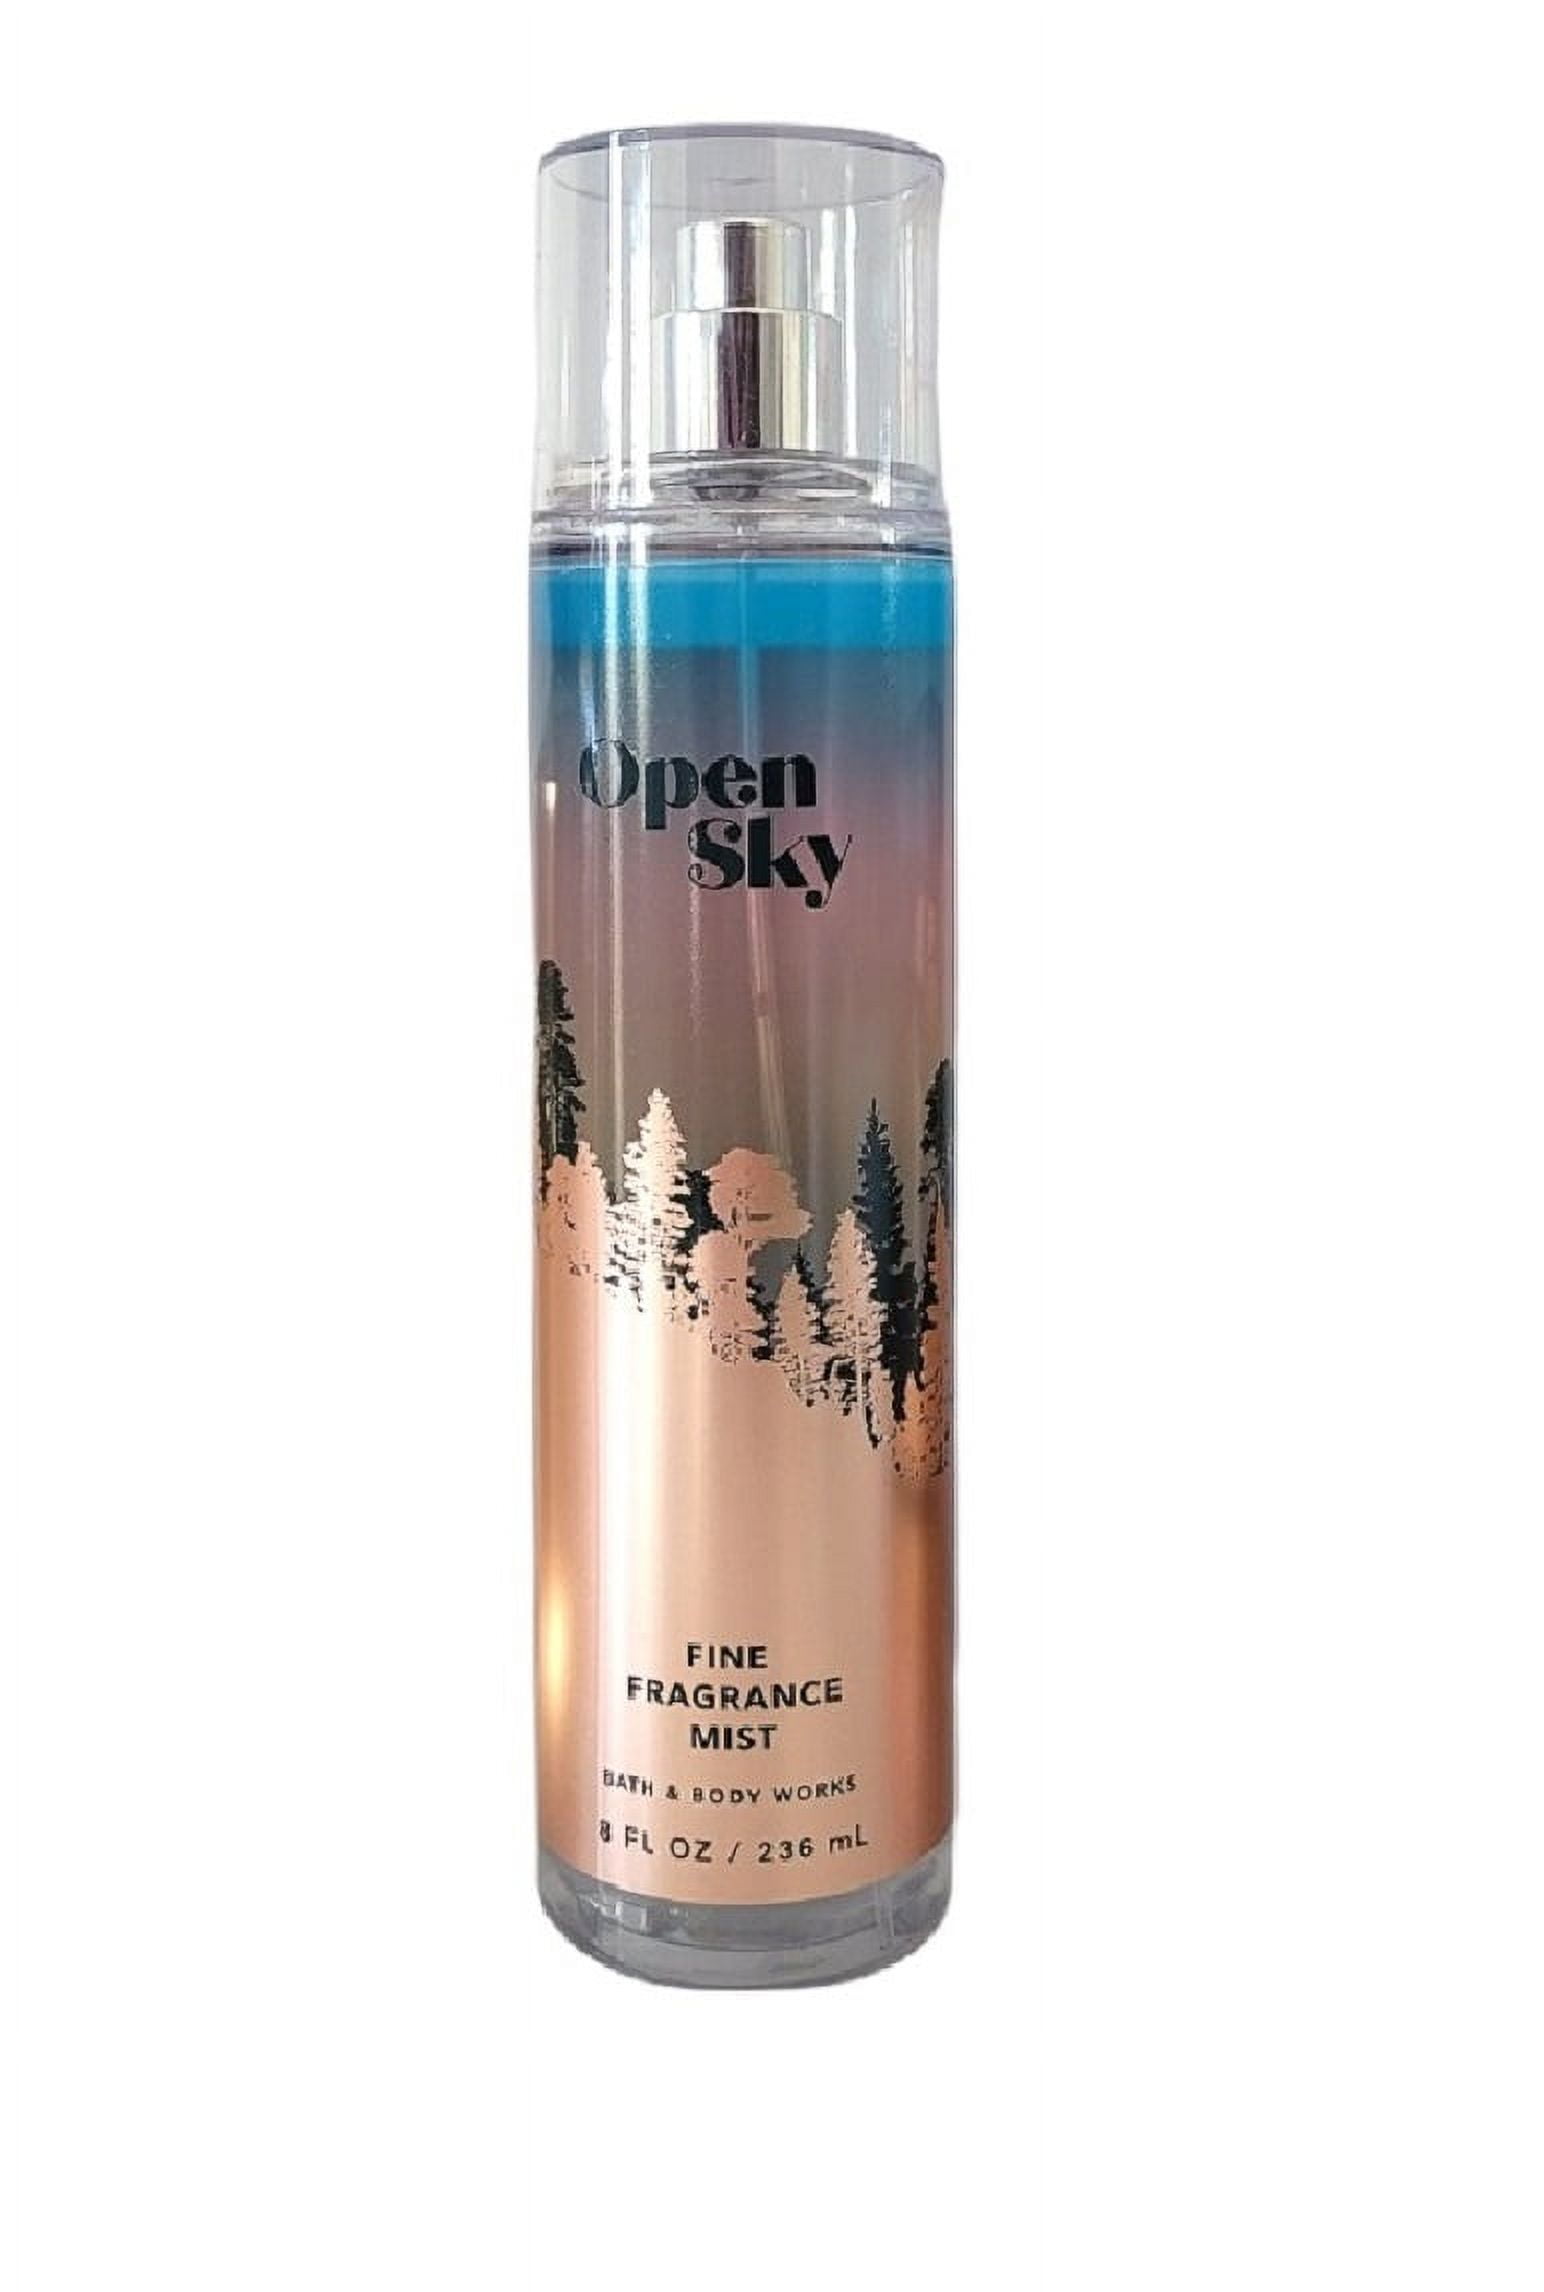 Bath  Body Works Open Sky Fine Fragrance Body Mist Spray 8 oz - Walmart.com